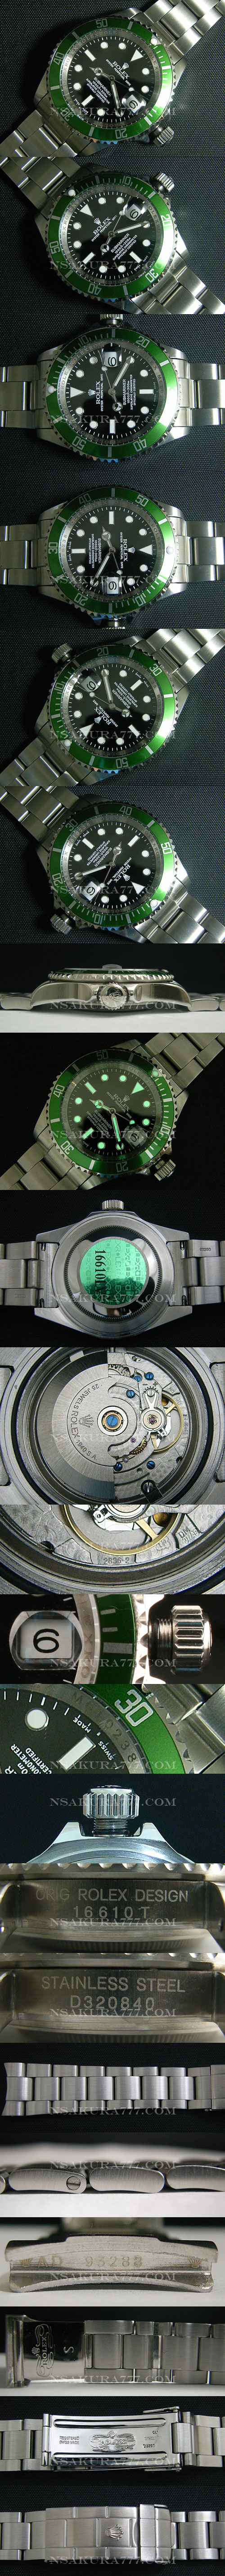 レプリカ時計 ロレックスサブマリーナ Swiss ETA社 2836-2 新型ケースに完全改良 - ウインドウを閉じる